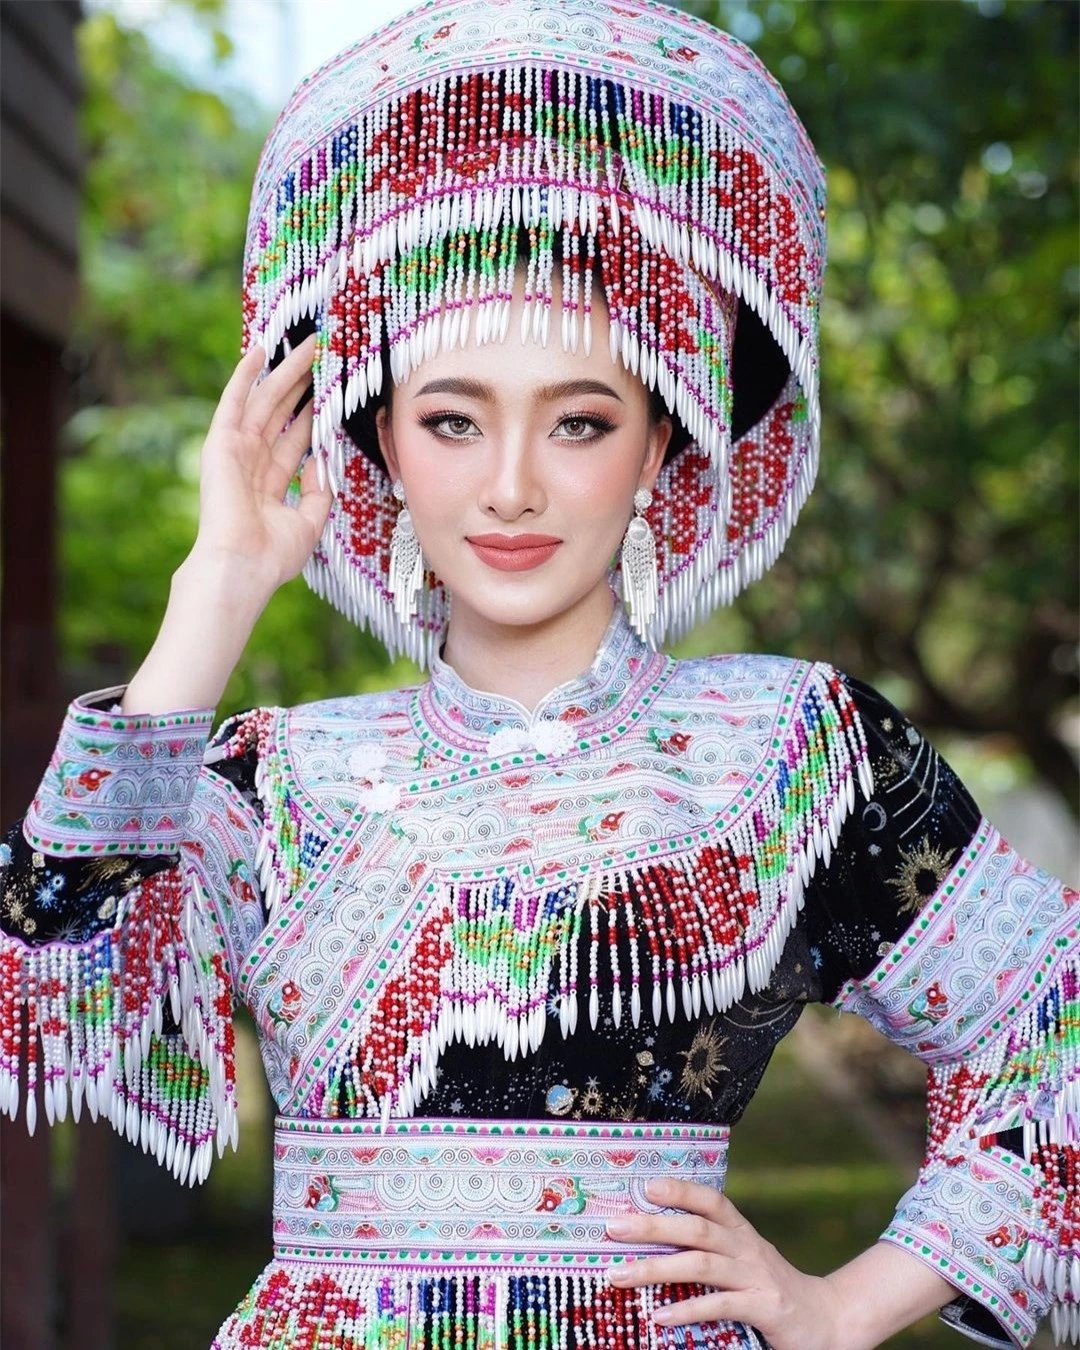 Nhan sắc đời thường người đẹp Lào sang Việt Nam thi hoa hậu ảnh 16